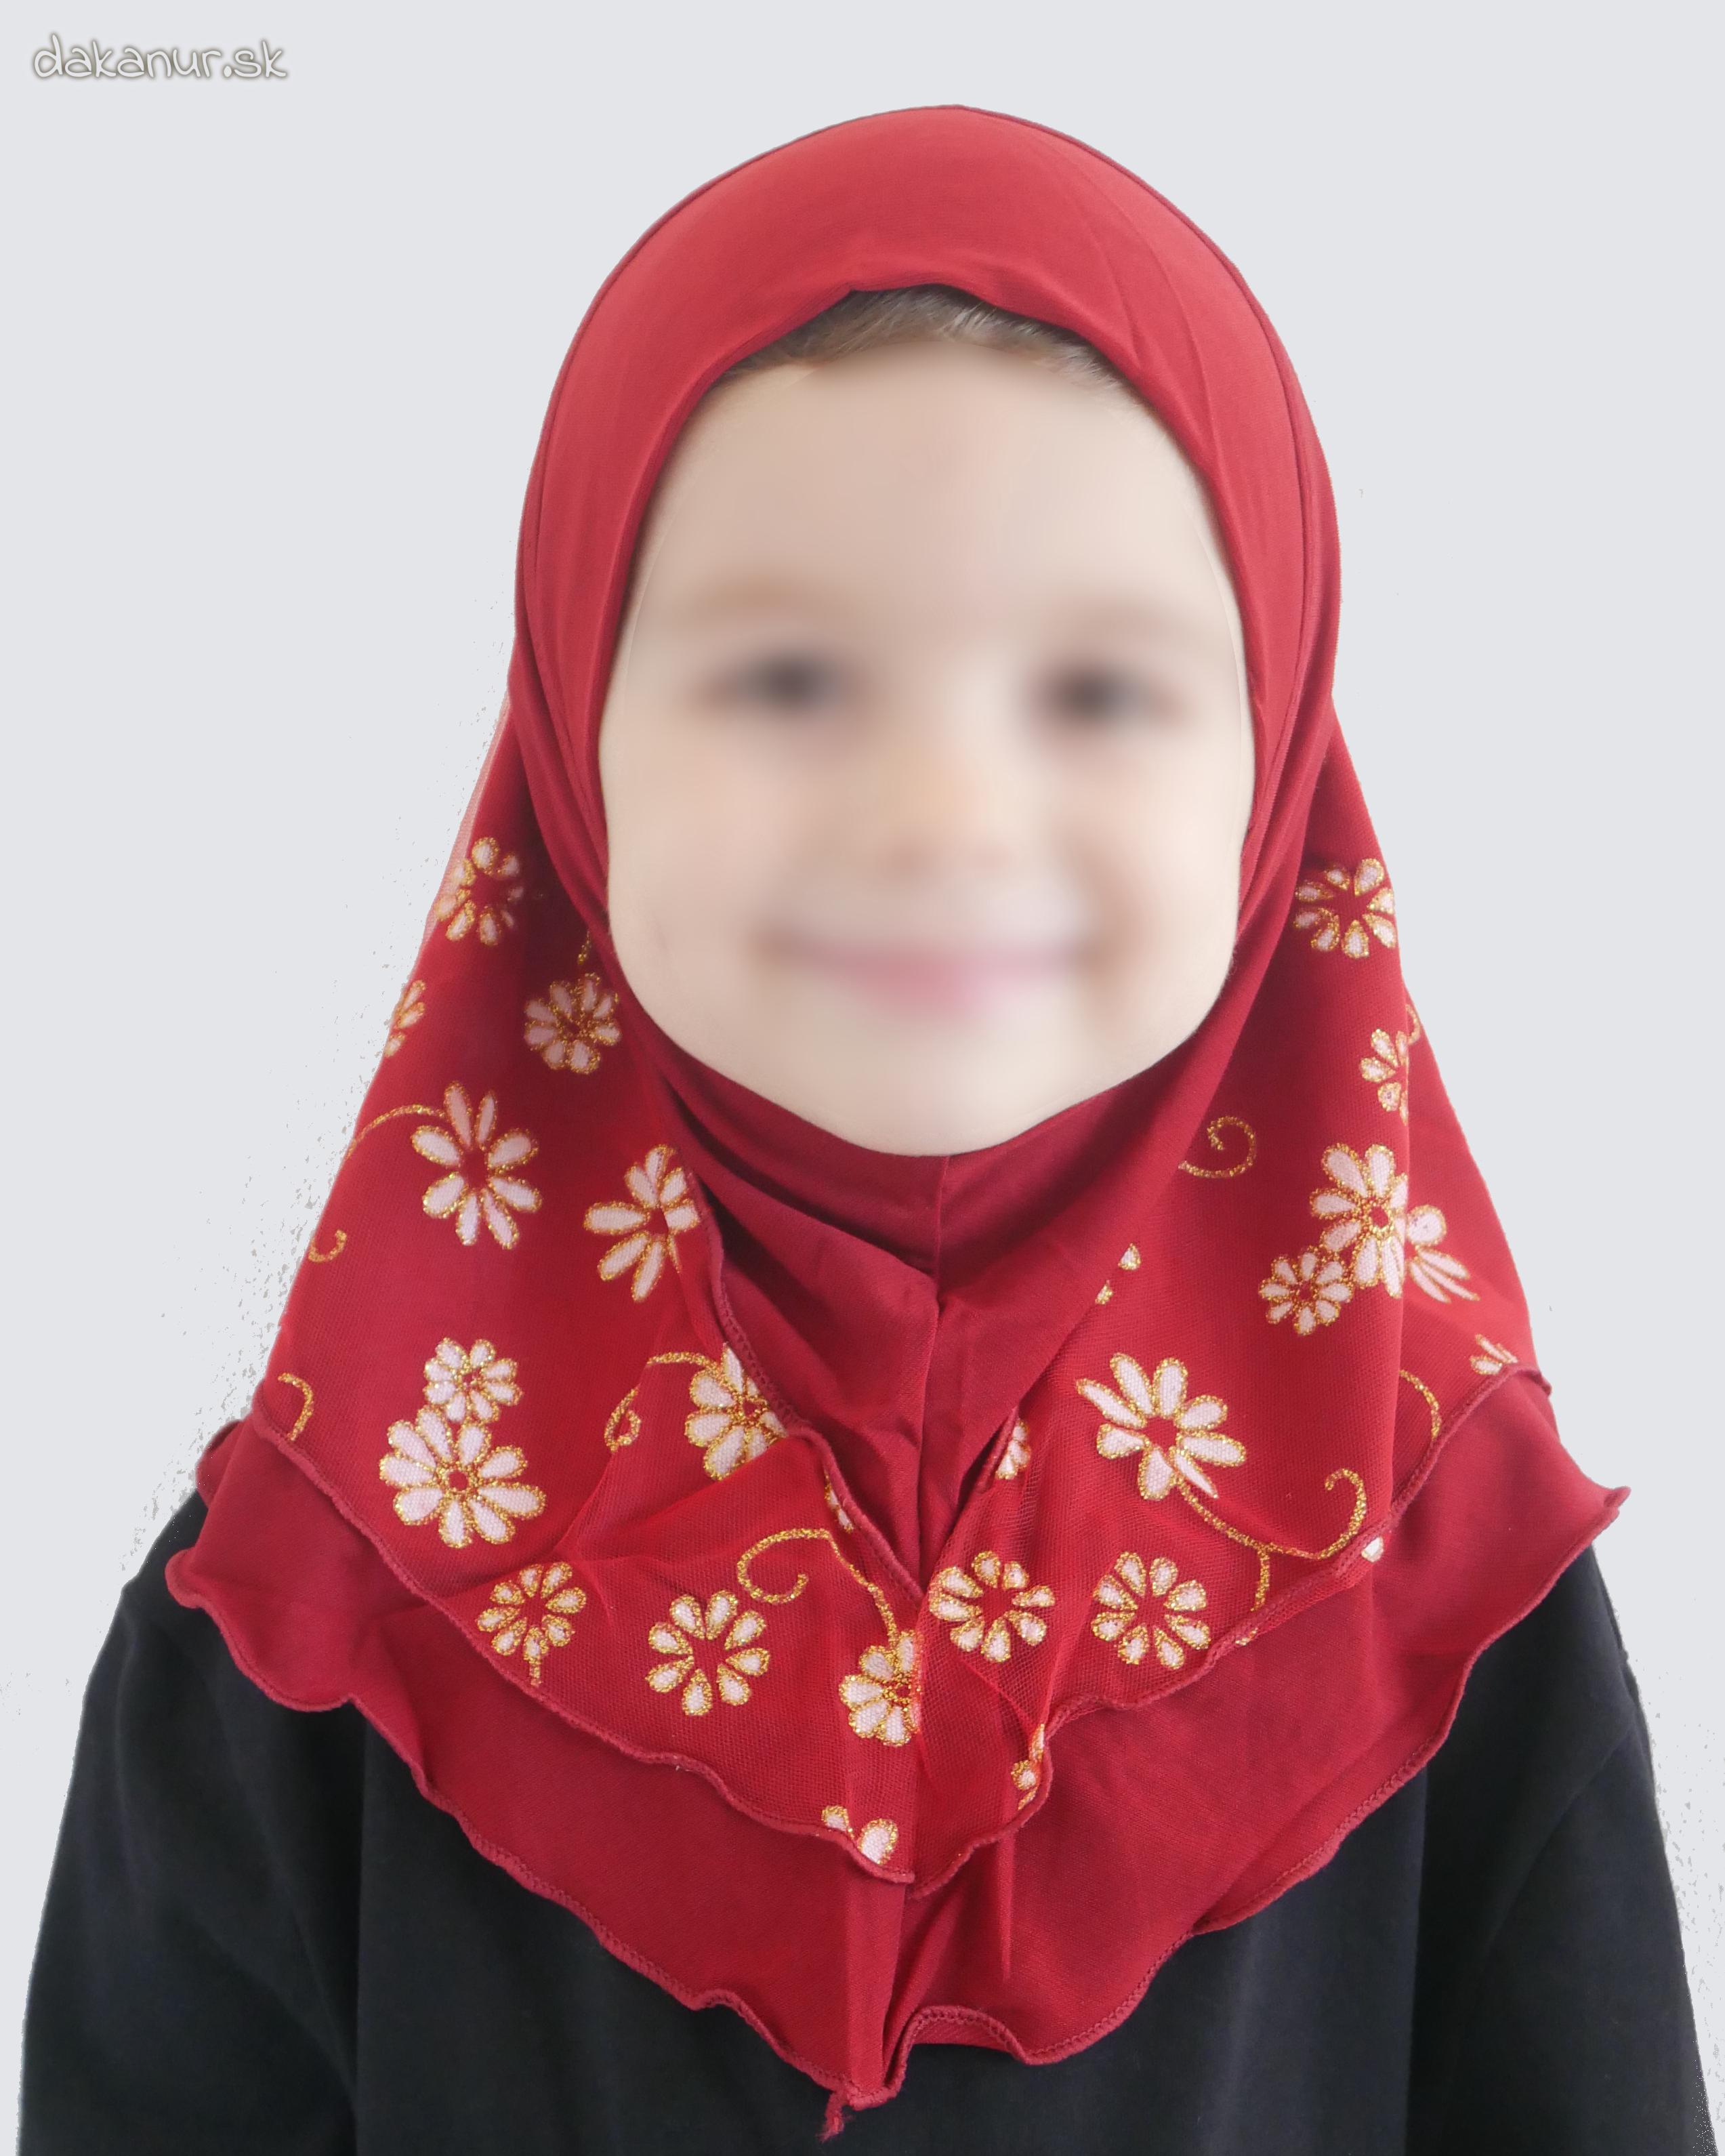 Detský bordový hijáb s kvietkovanou potlačou